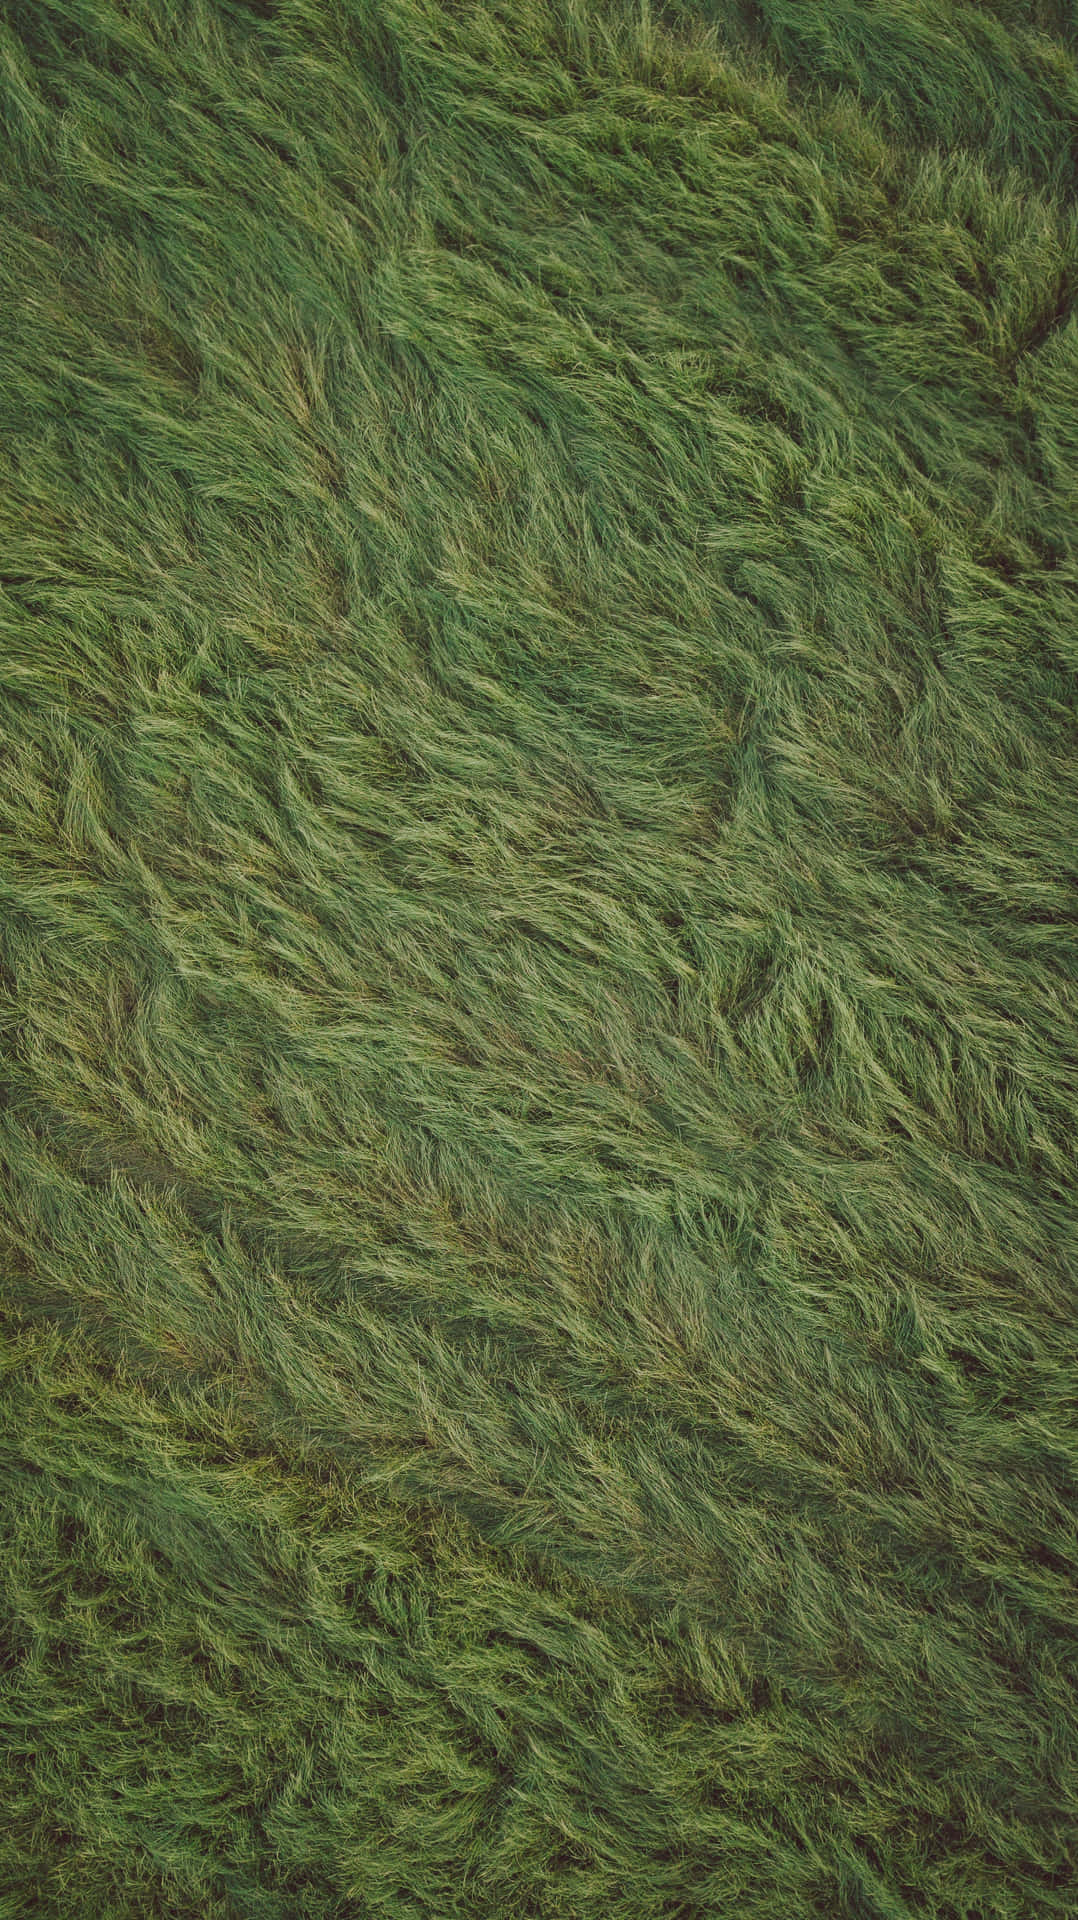 Green Grass Field Texture Background